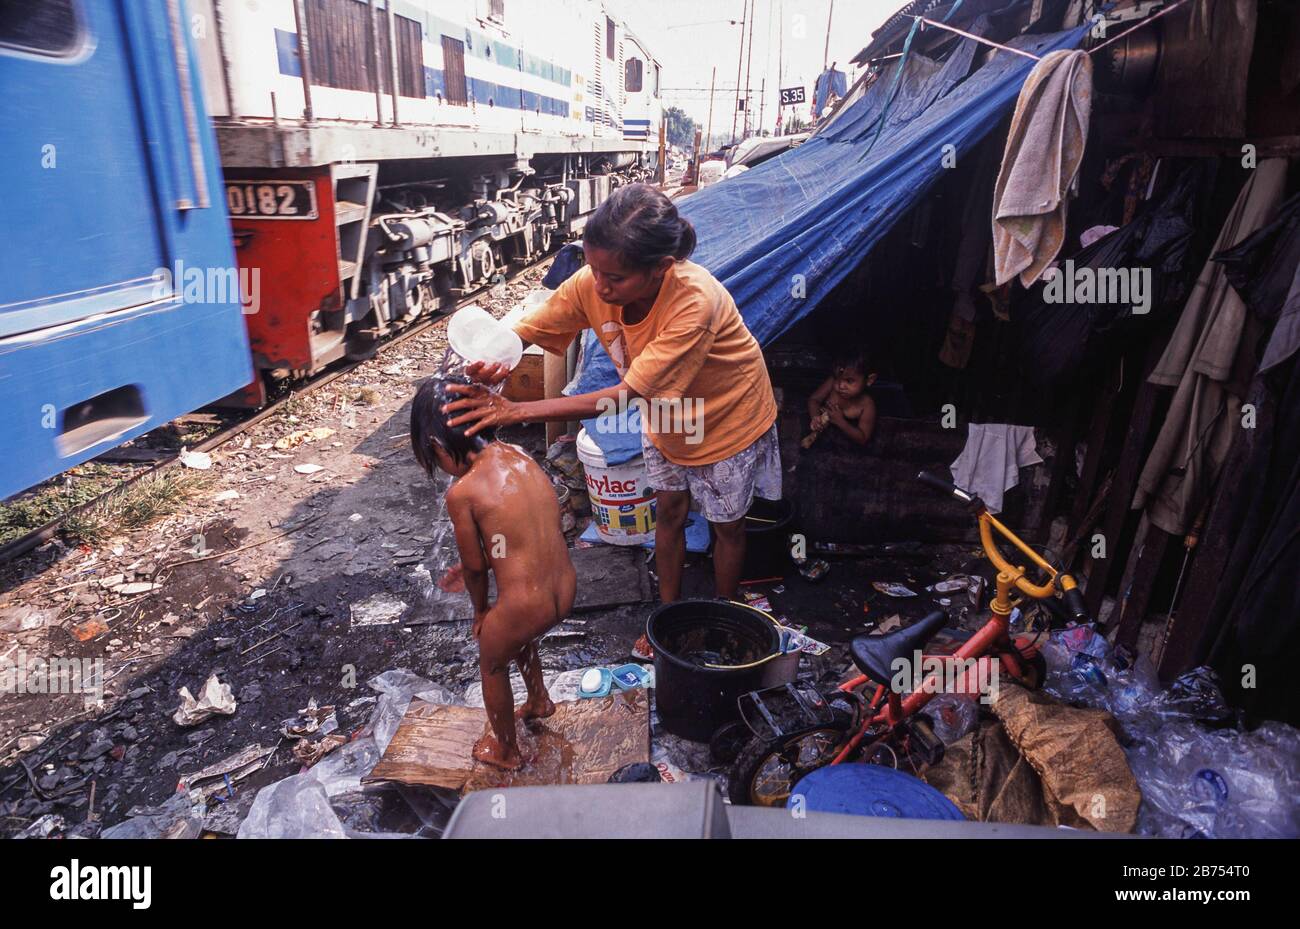 10.08.2009, Jakarta, Java, Indonesia, Asia - UNA madre sta lavando il suo bambino vicino ai binari ferroviari in una zona di baraccopoli della capitale indonesiana. [traduzione automatica] Foto Stock